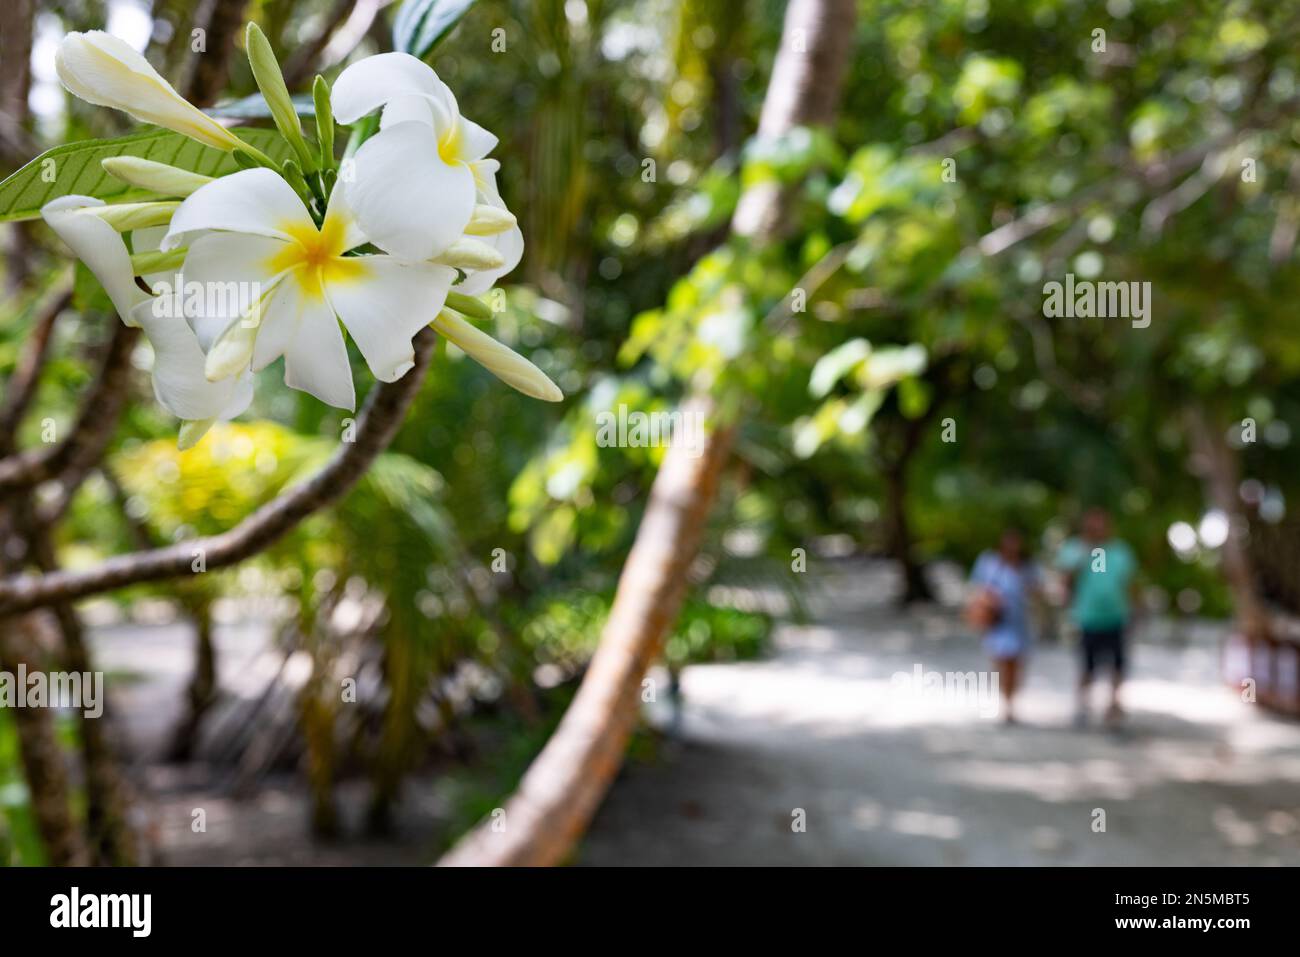 Touristen auf den Malediven; Frangipani-Blumen und ein Touristenpaar in einer tropischen Insellandschaft, im Urlaub; die Malediven-Inseln, Asien Stockfoto